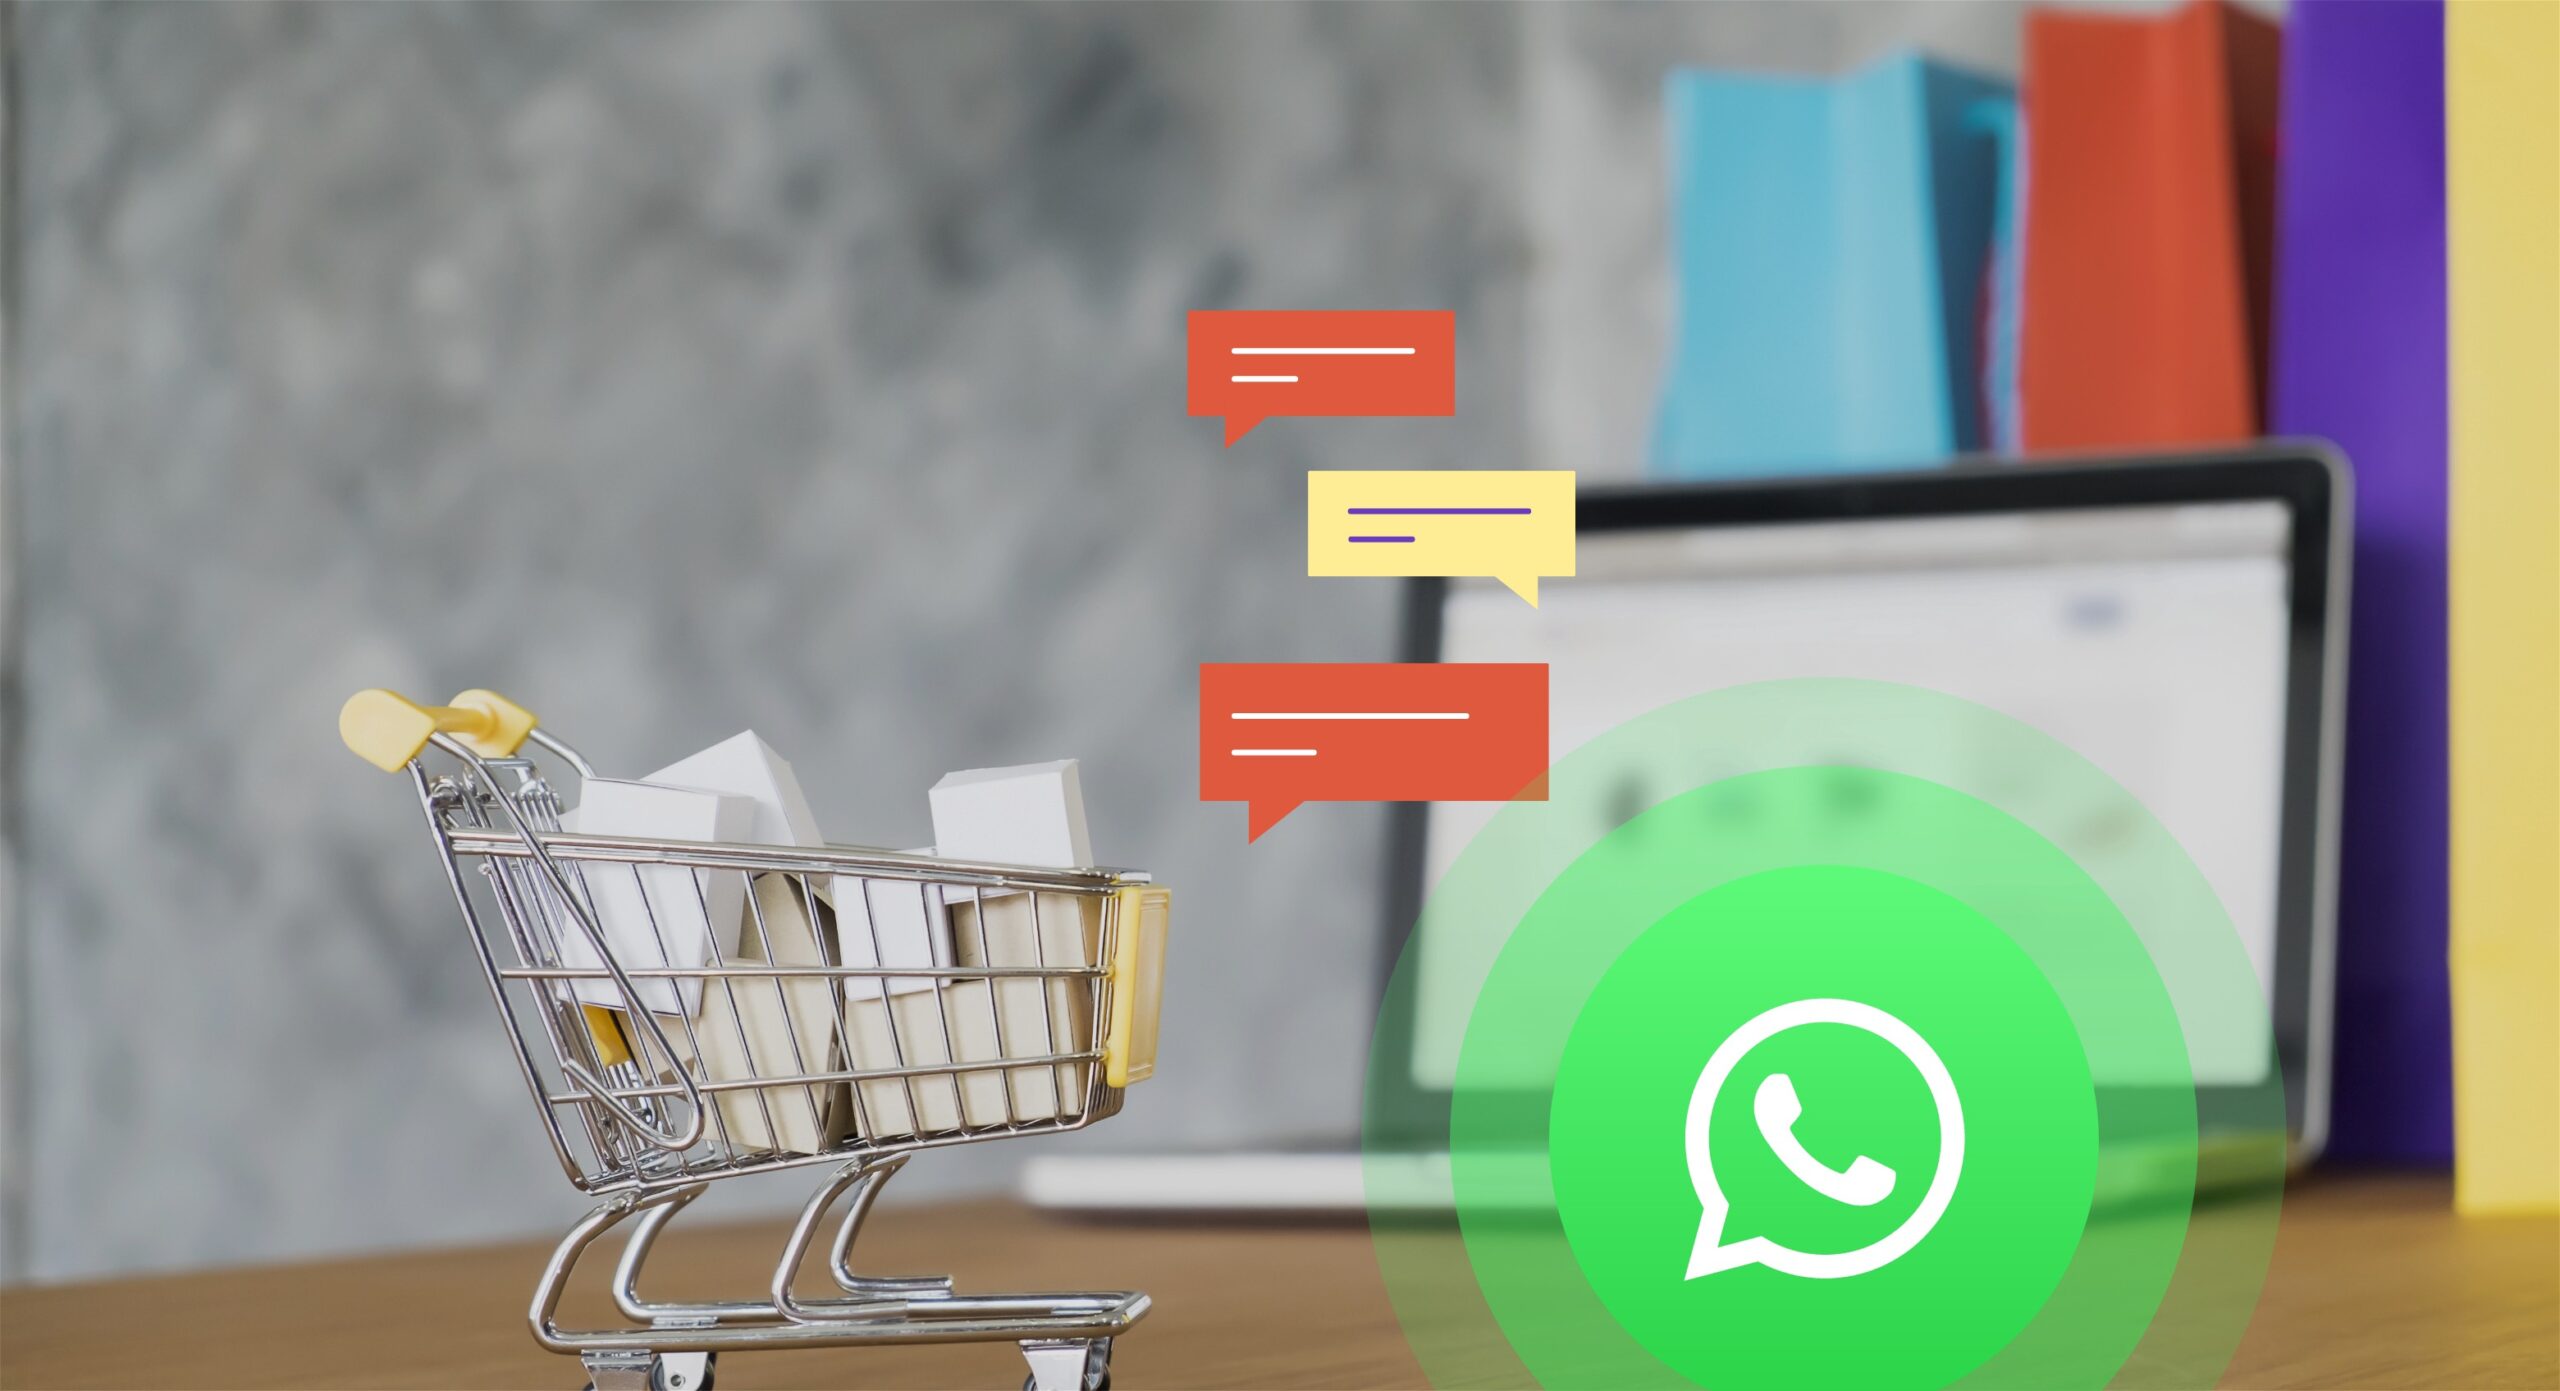 WhatsApp’ta Alışveriş Dönemi Başlıyor!